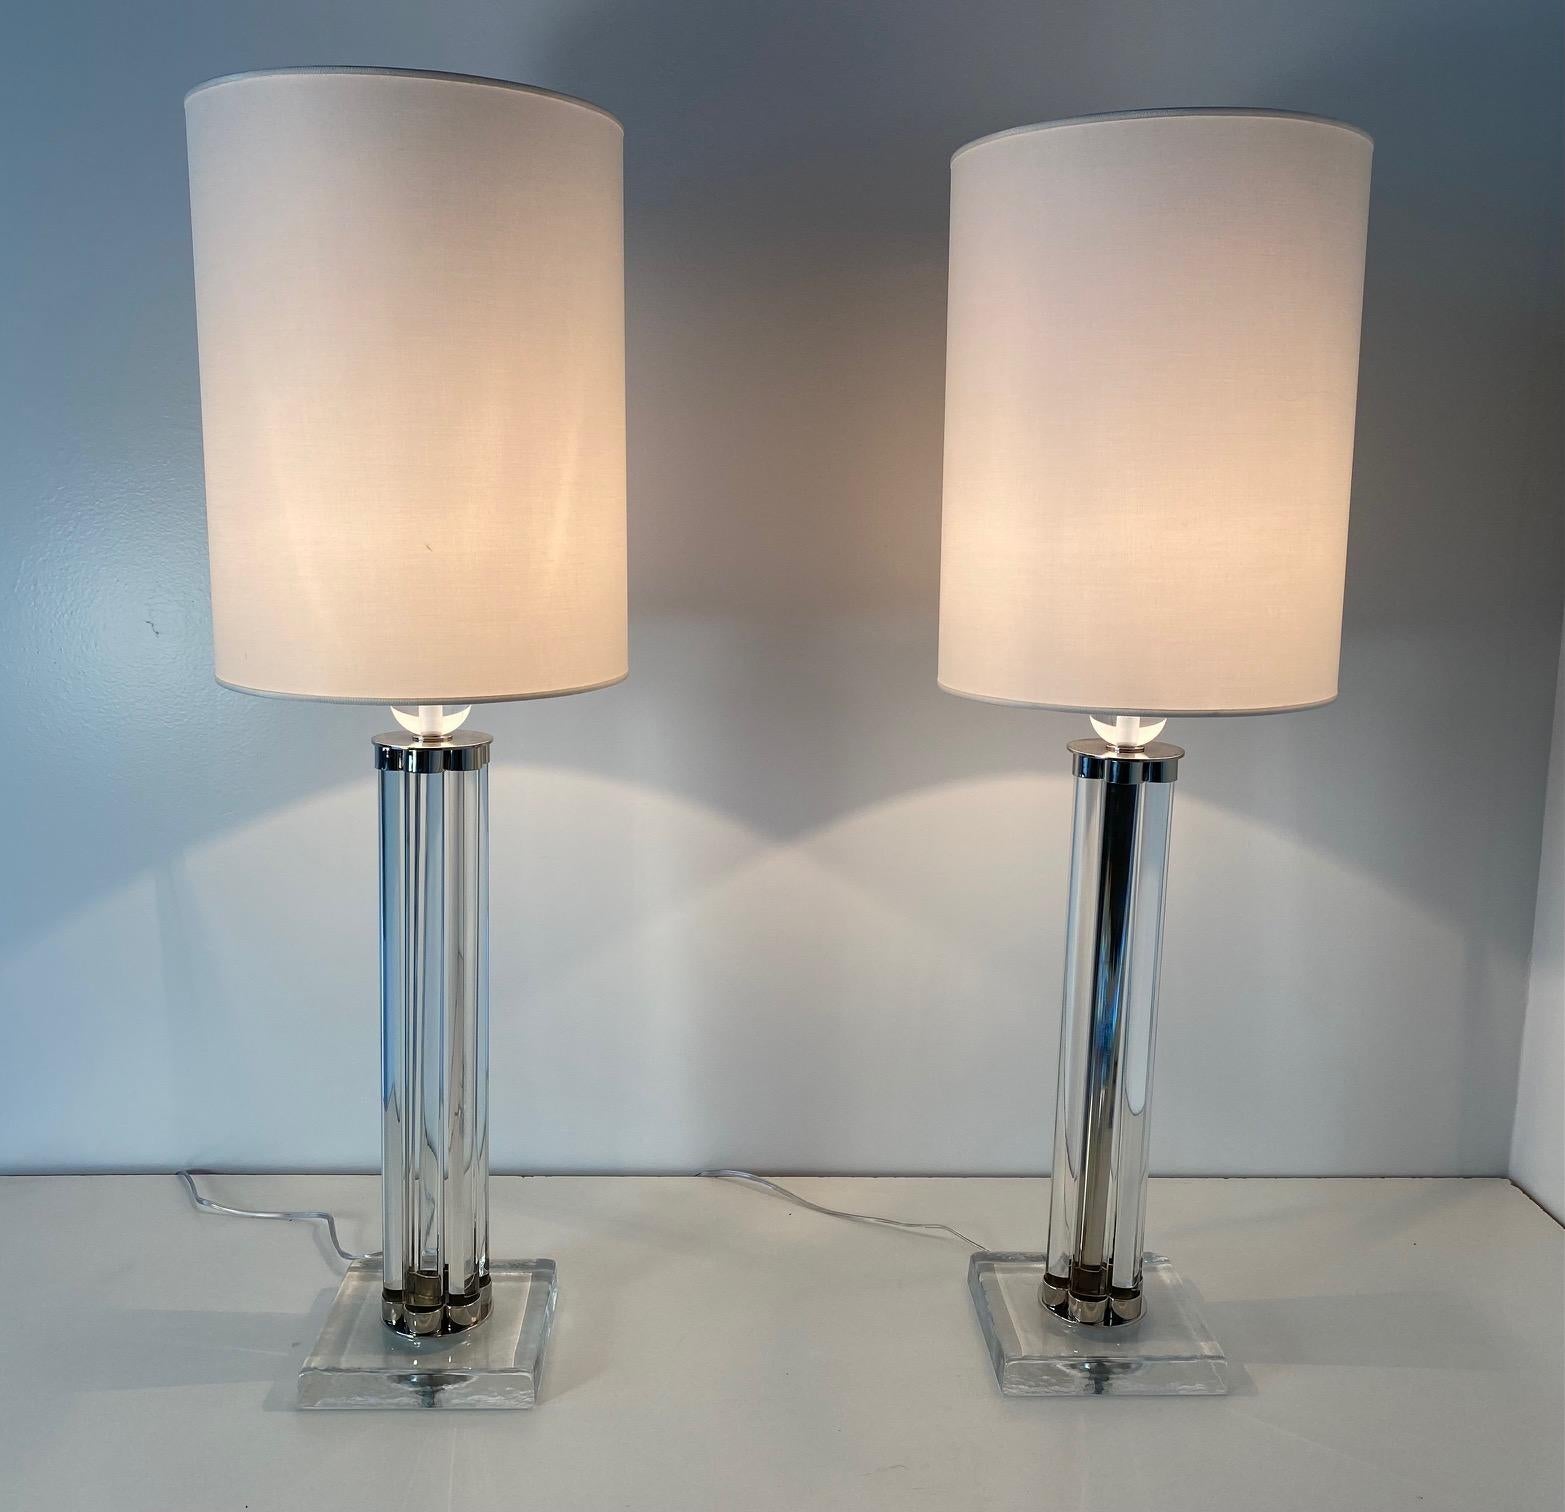 Dieses Paar Murano-Lampen wurde in den frühen 2000er Jahren in Italien hergestellt.
Die Lampen sind komplett aus Muranoglas und Chromdetails, während der Lampenschirm weiß ist. 